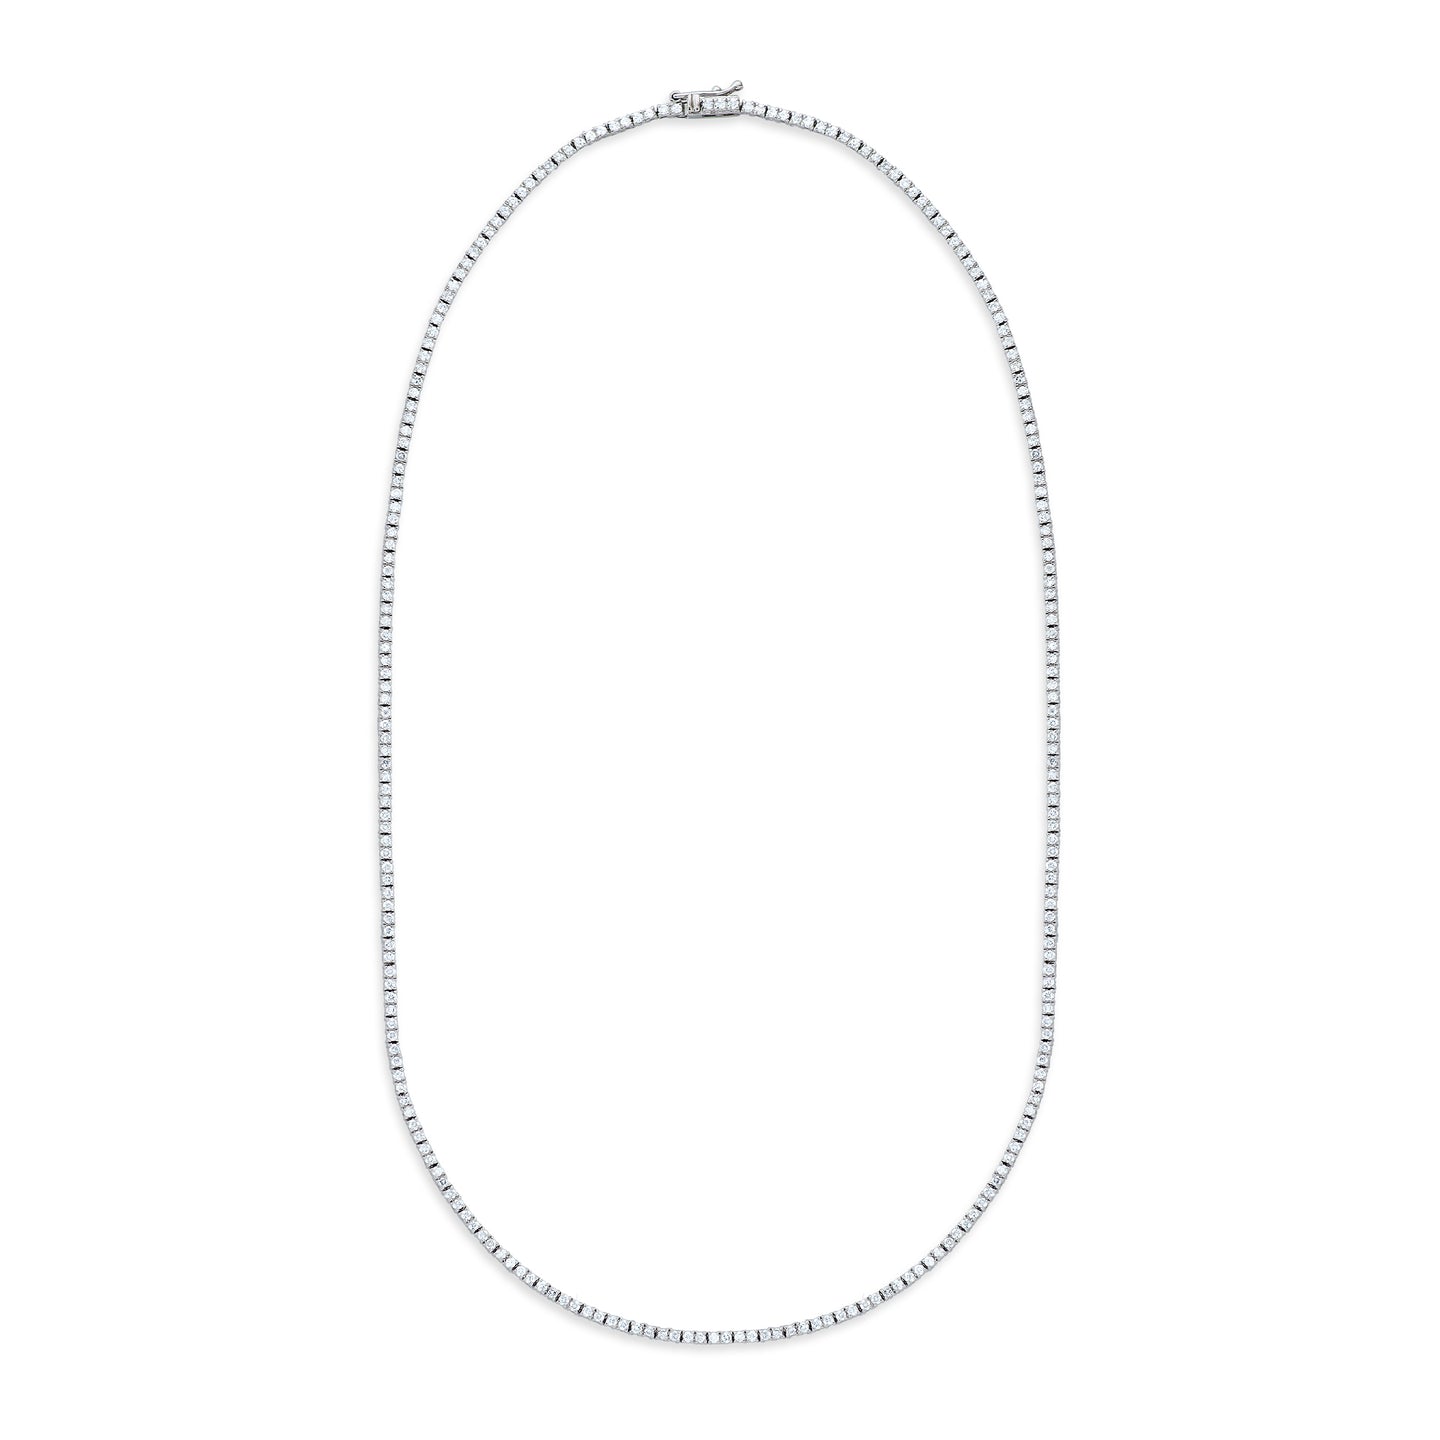 The Nikki 2 Straight Line Diamond Tennis Necklace